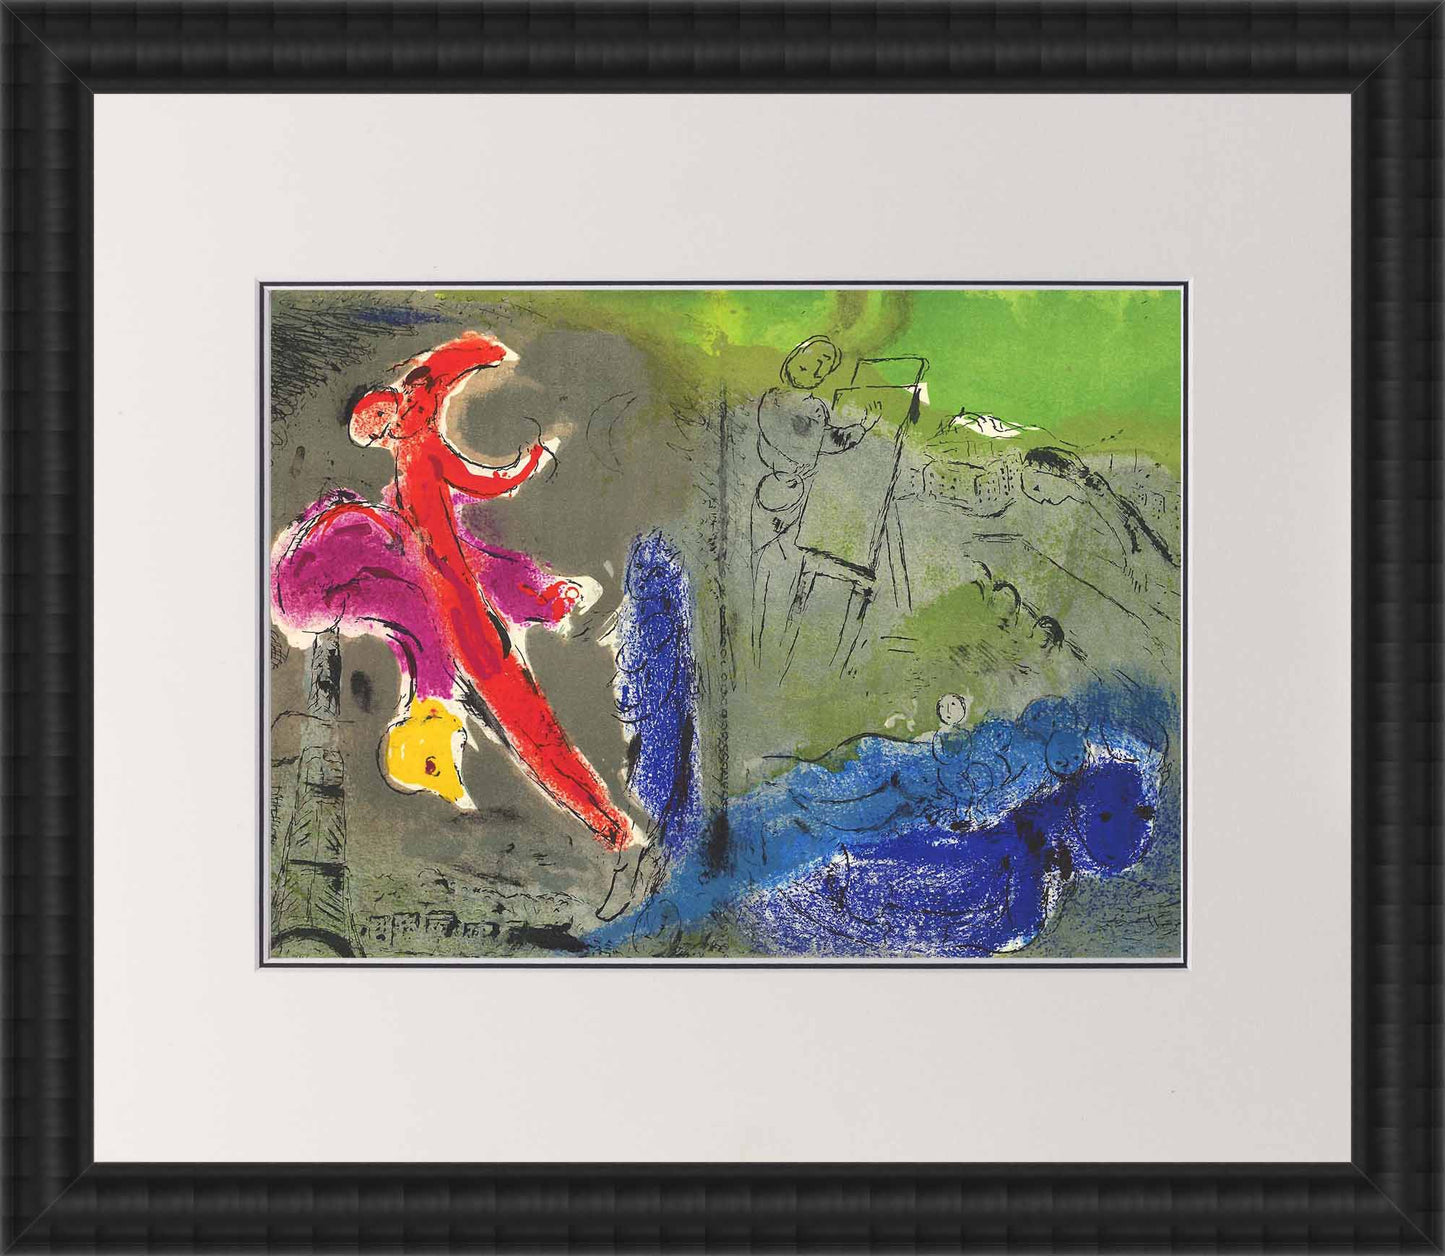 Marc Chagall; Vision de Paris: Le peintre, ses modeles, la Tour Eiffel lithograph Verve – Vol 7. No. 27 frame